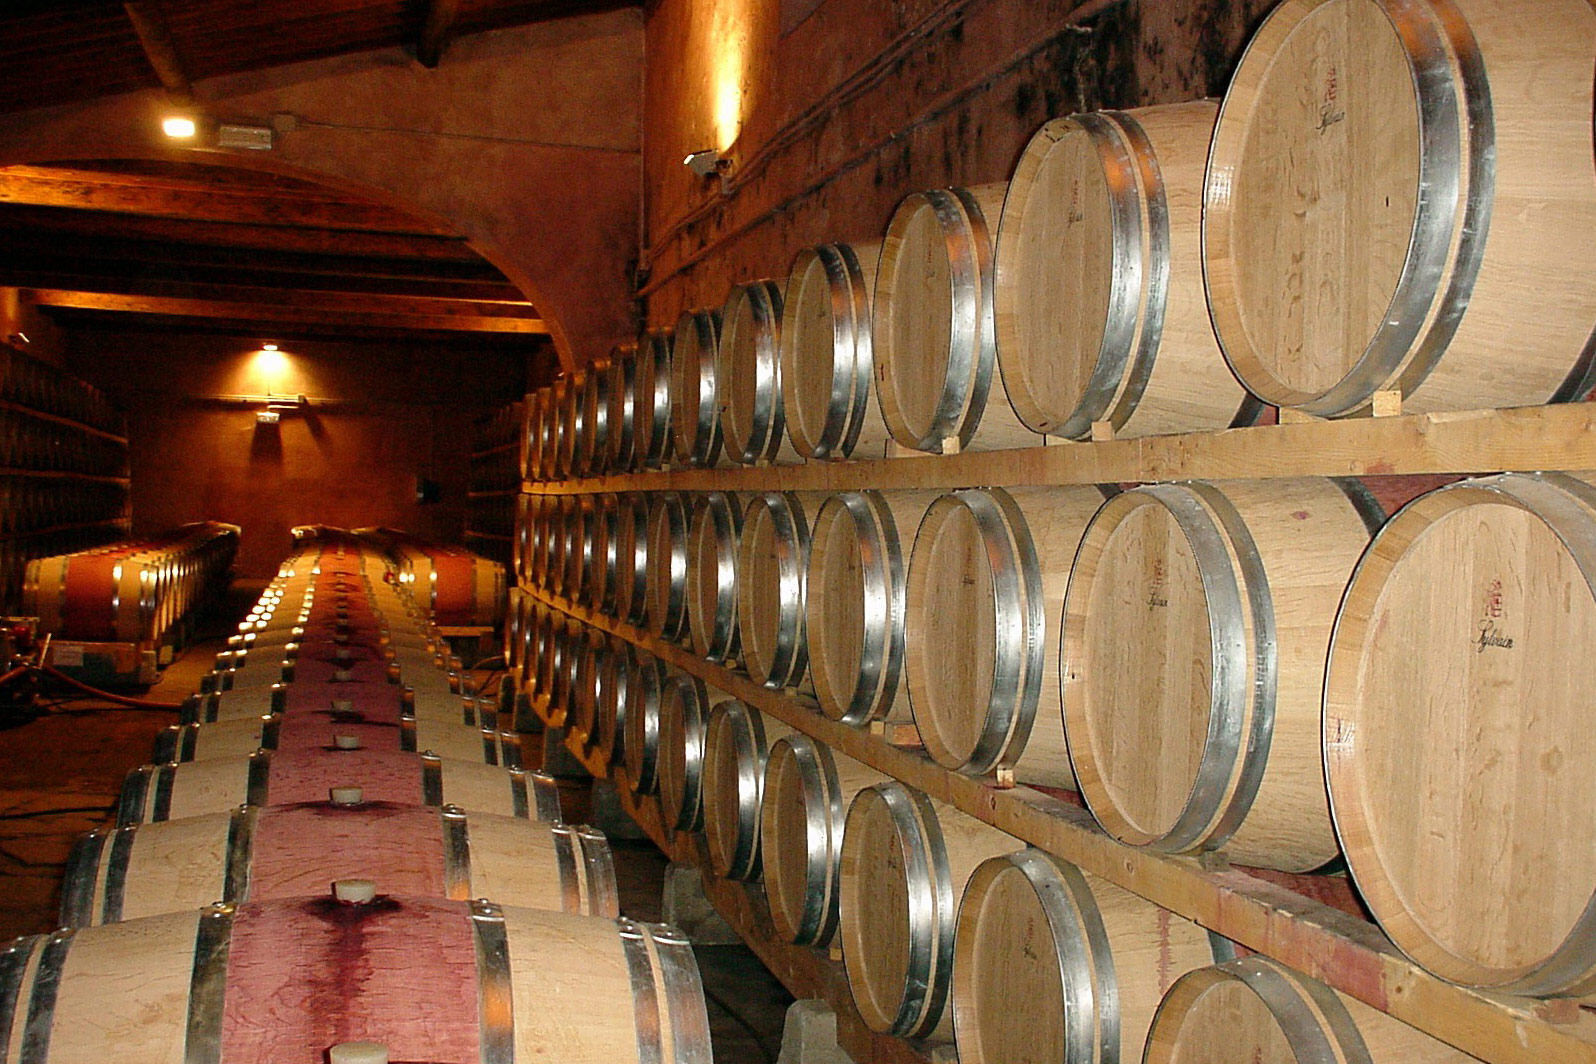 Fotografija prikazuje vinski podrum u kojem su dugi nizovi bačava.